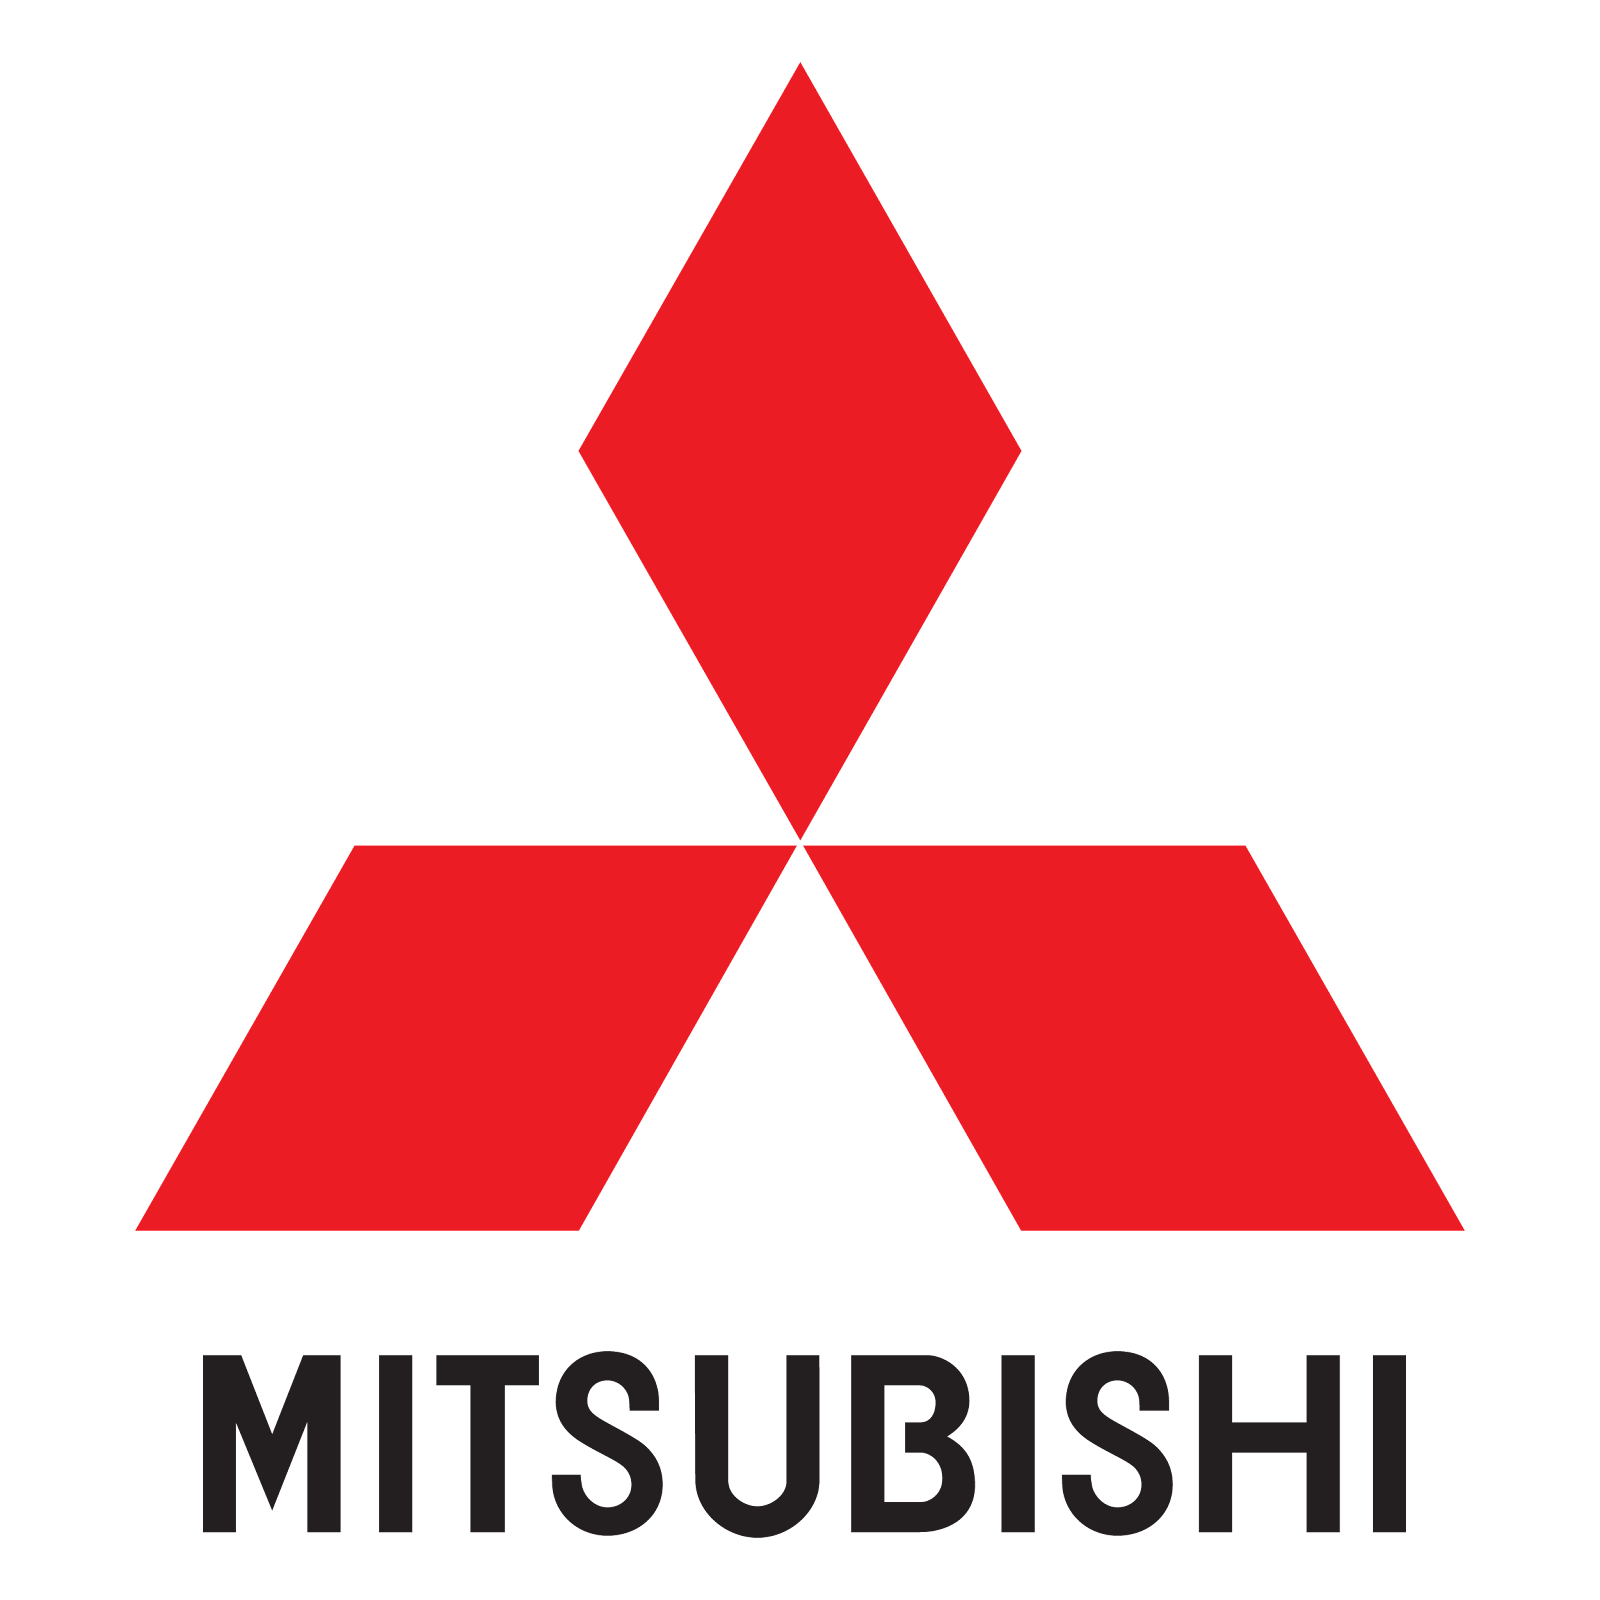 Logo Mitsubishi png Free Download Cdr, Eps, Vector